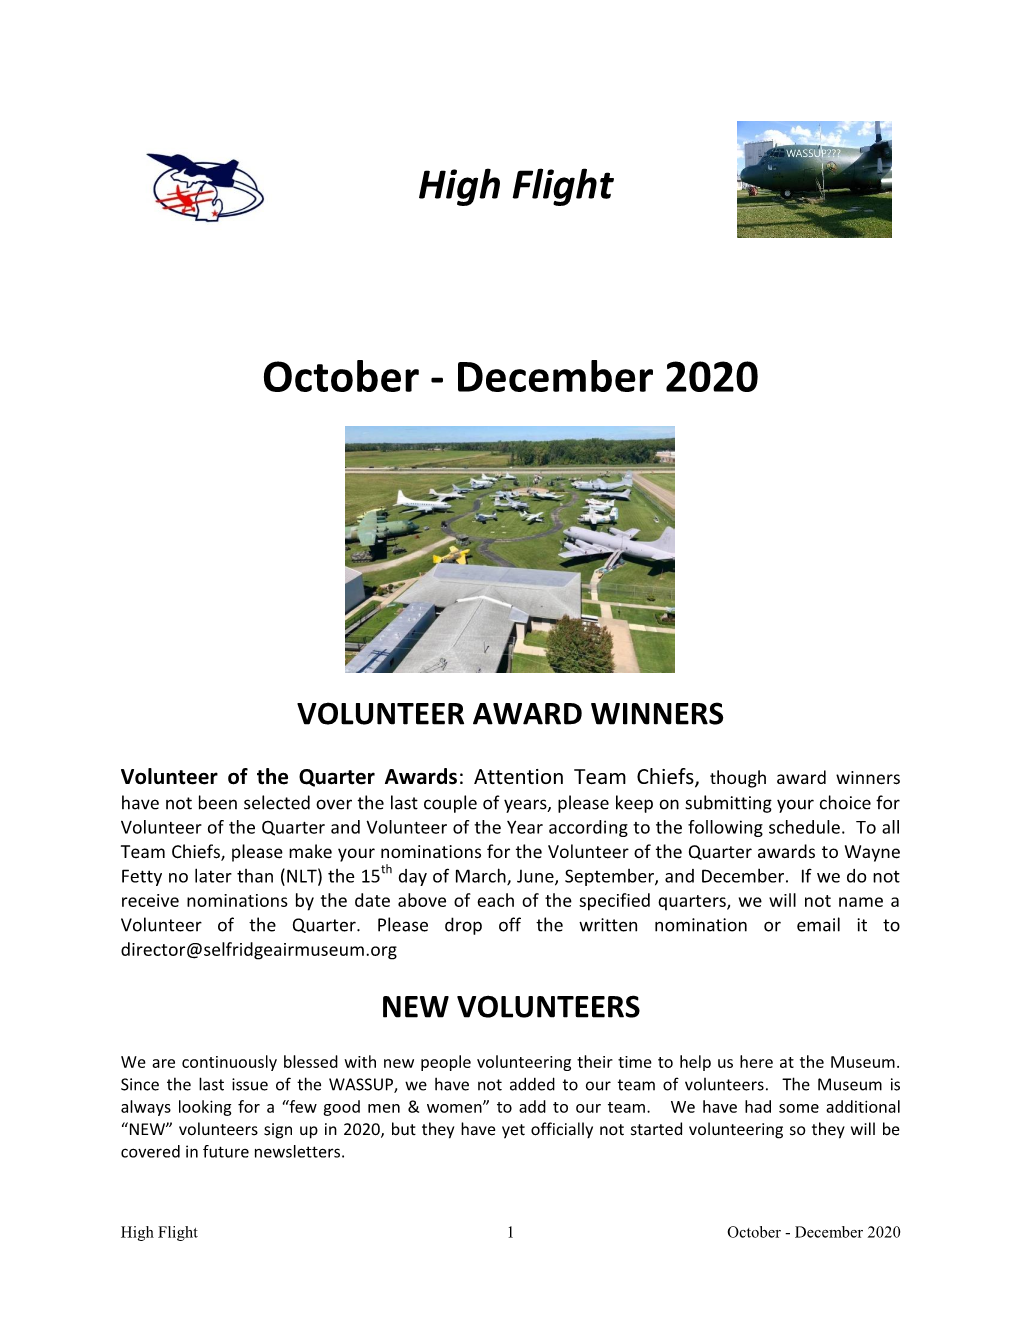 High Flight October-December 2020